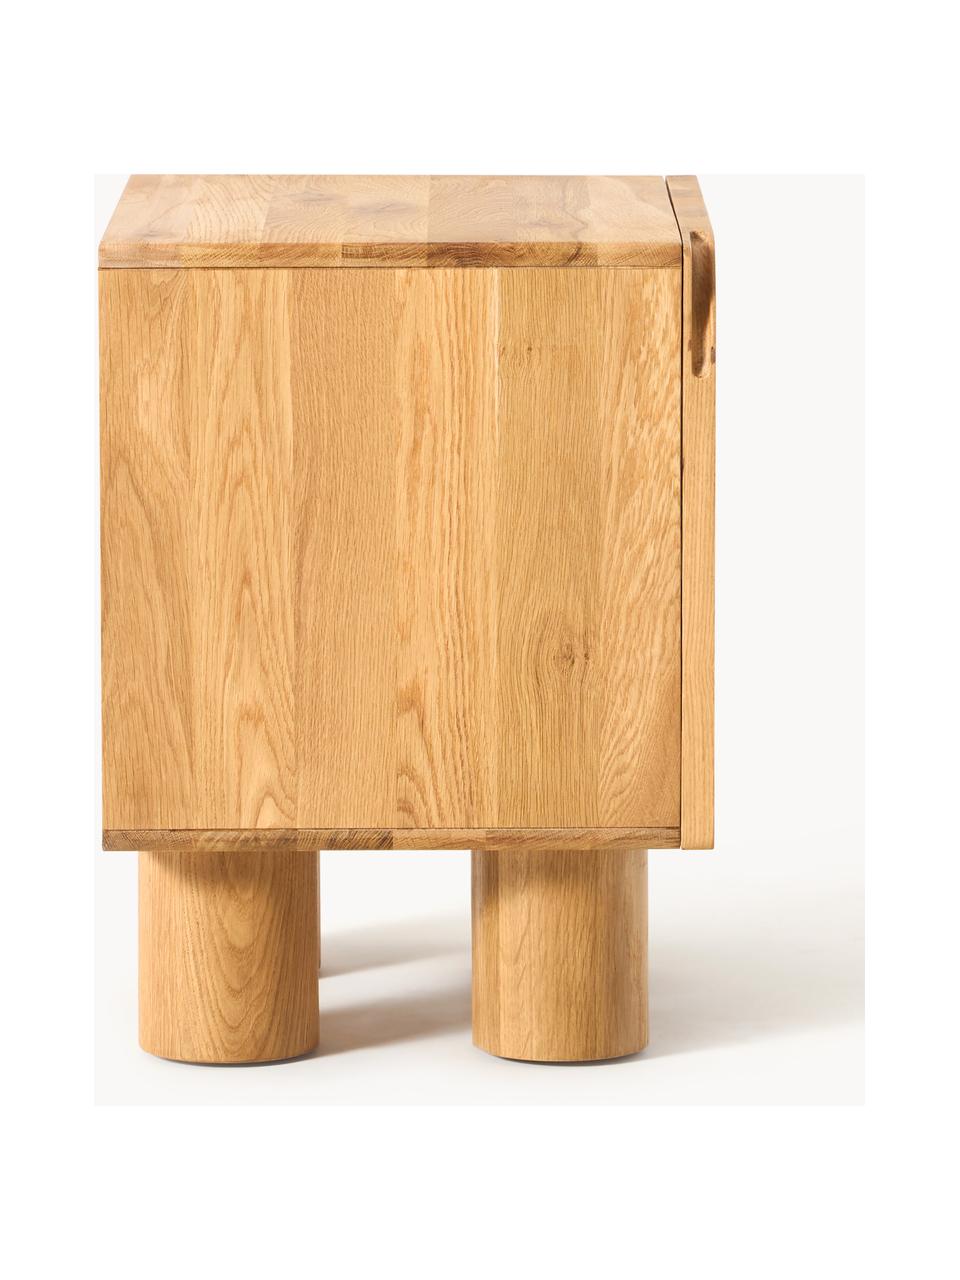 Nočný stolík z dubového dreva Cadi, Dubové drevo, ošetrené olejom, Š 50 x V 55 cm